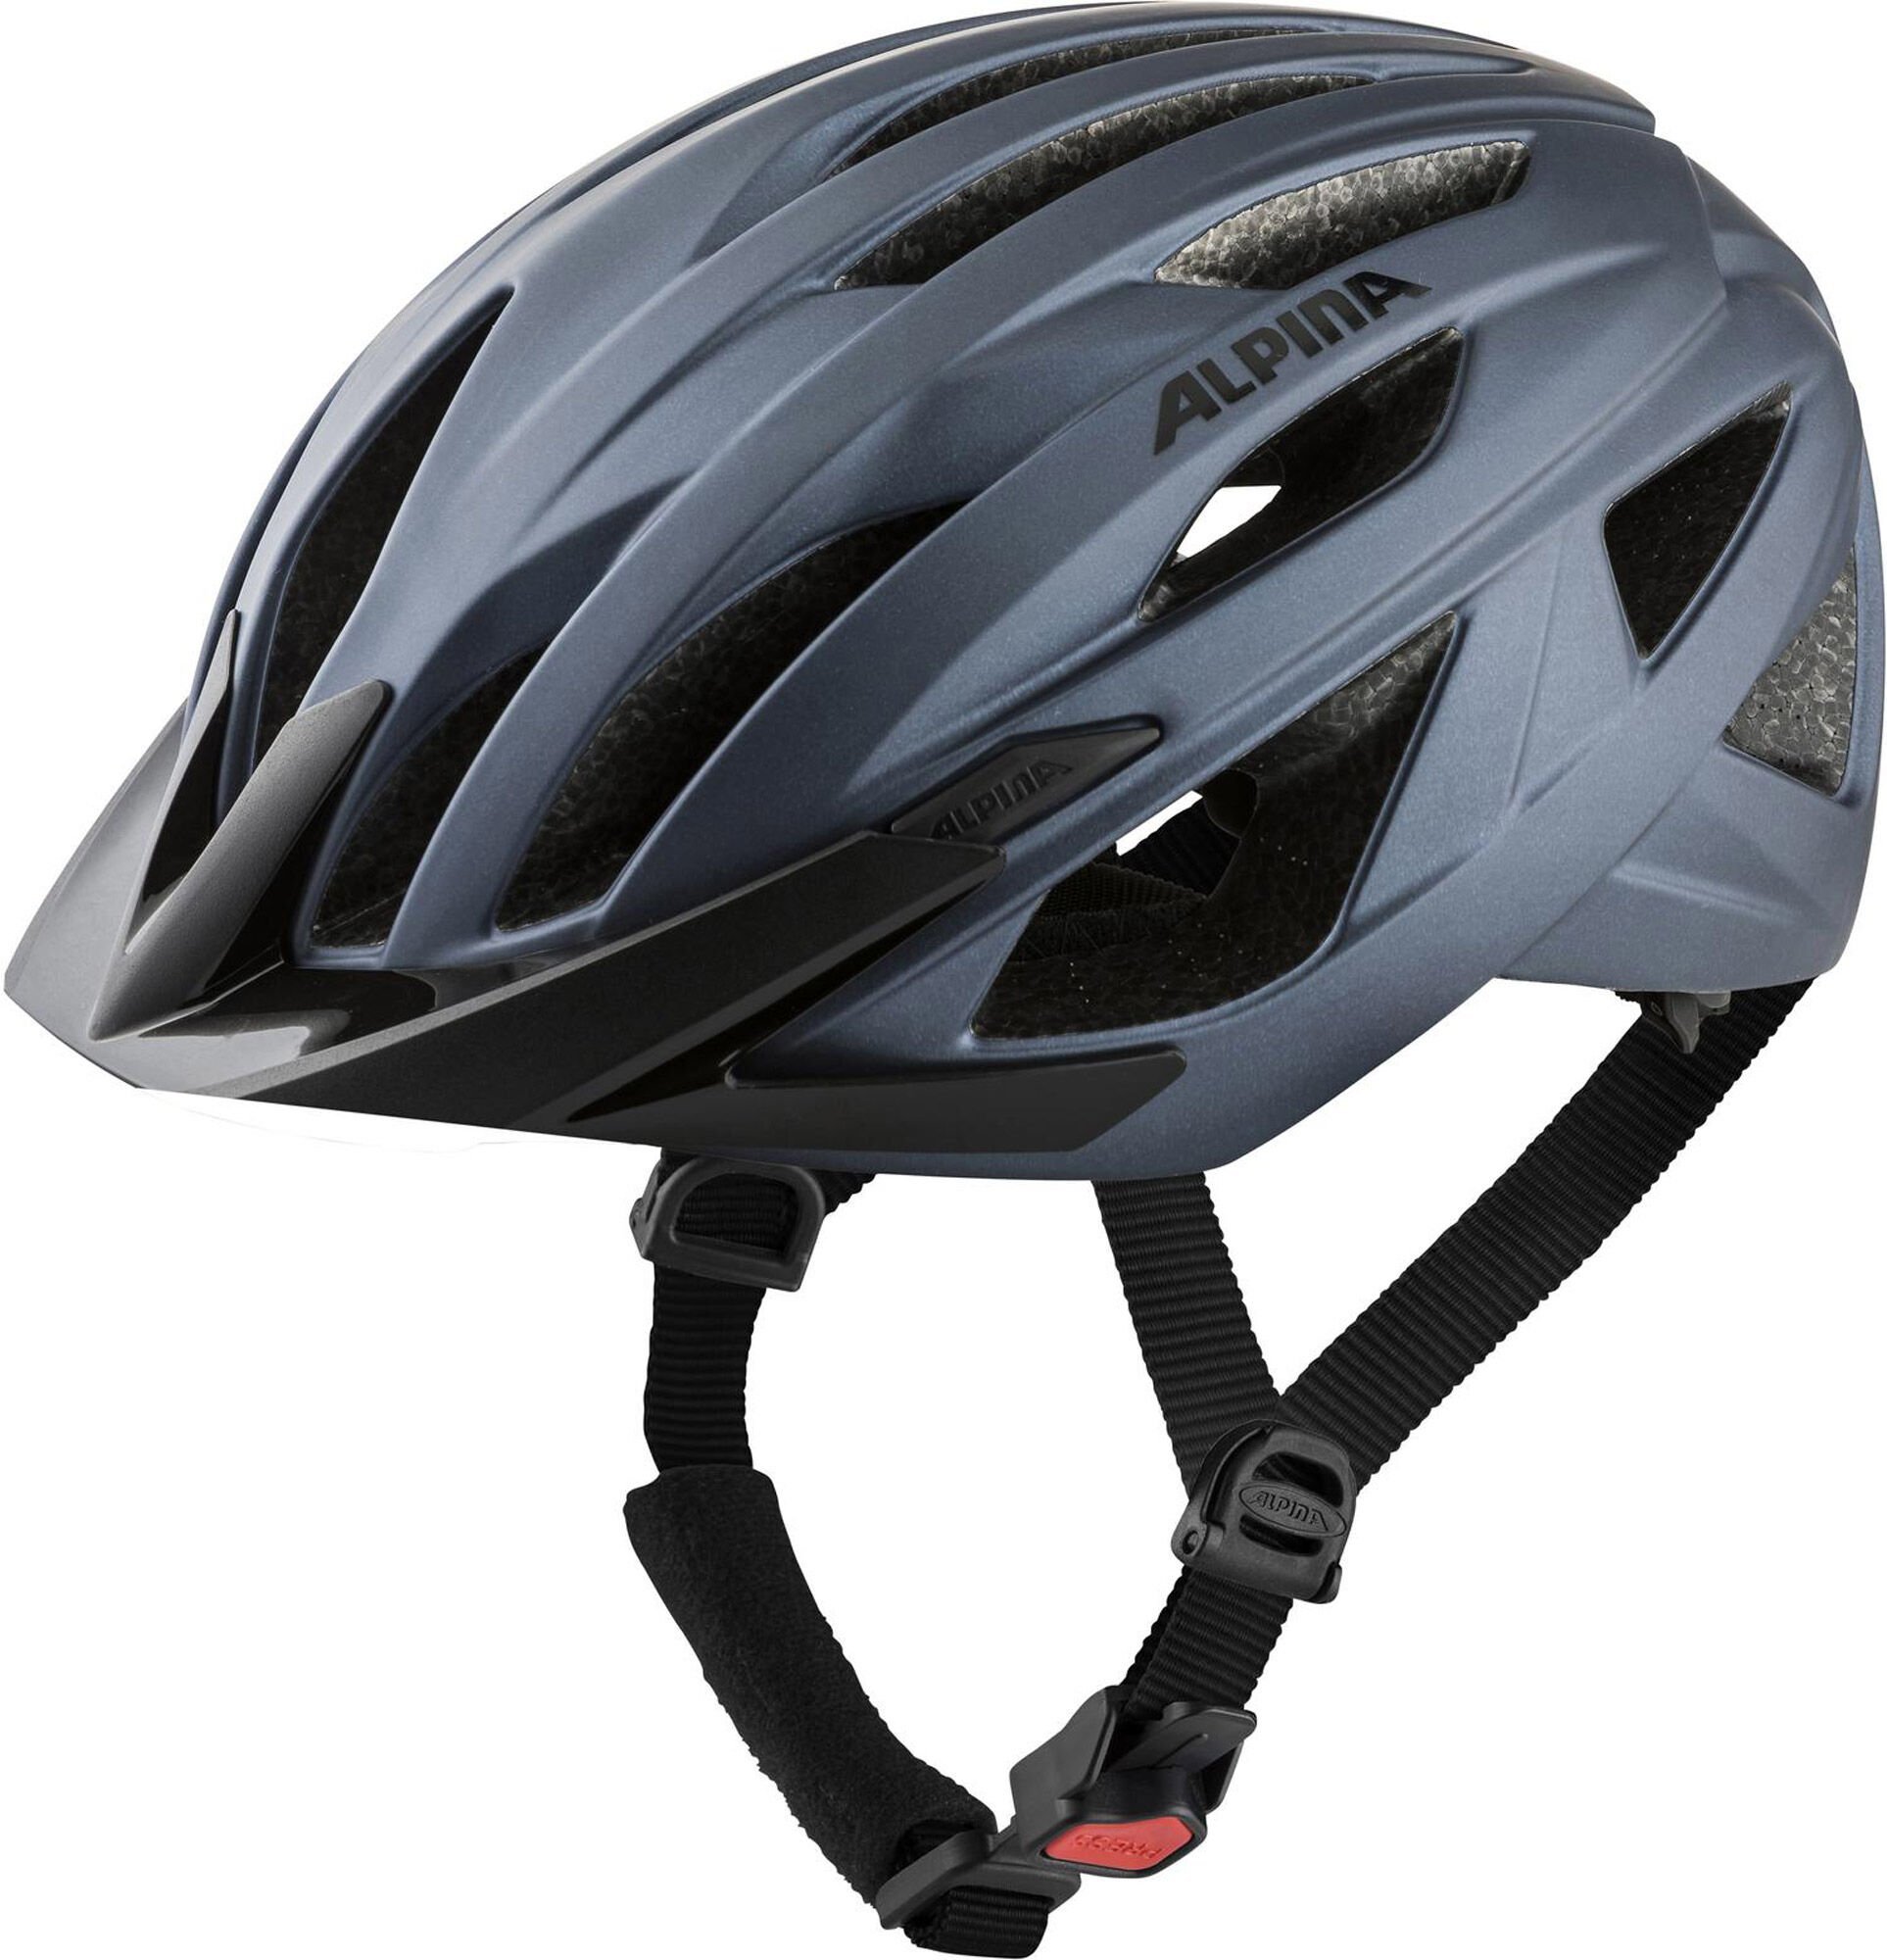 Alpina Parana Helmet 51-56 cm